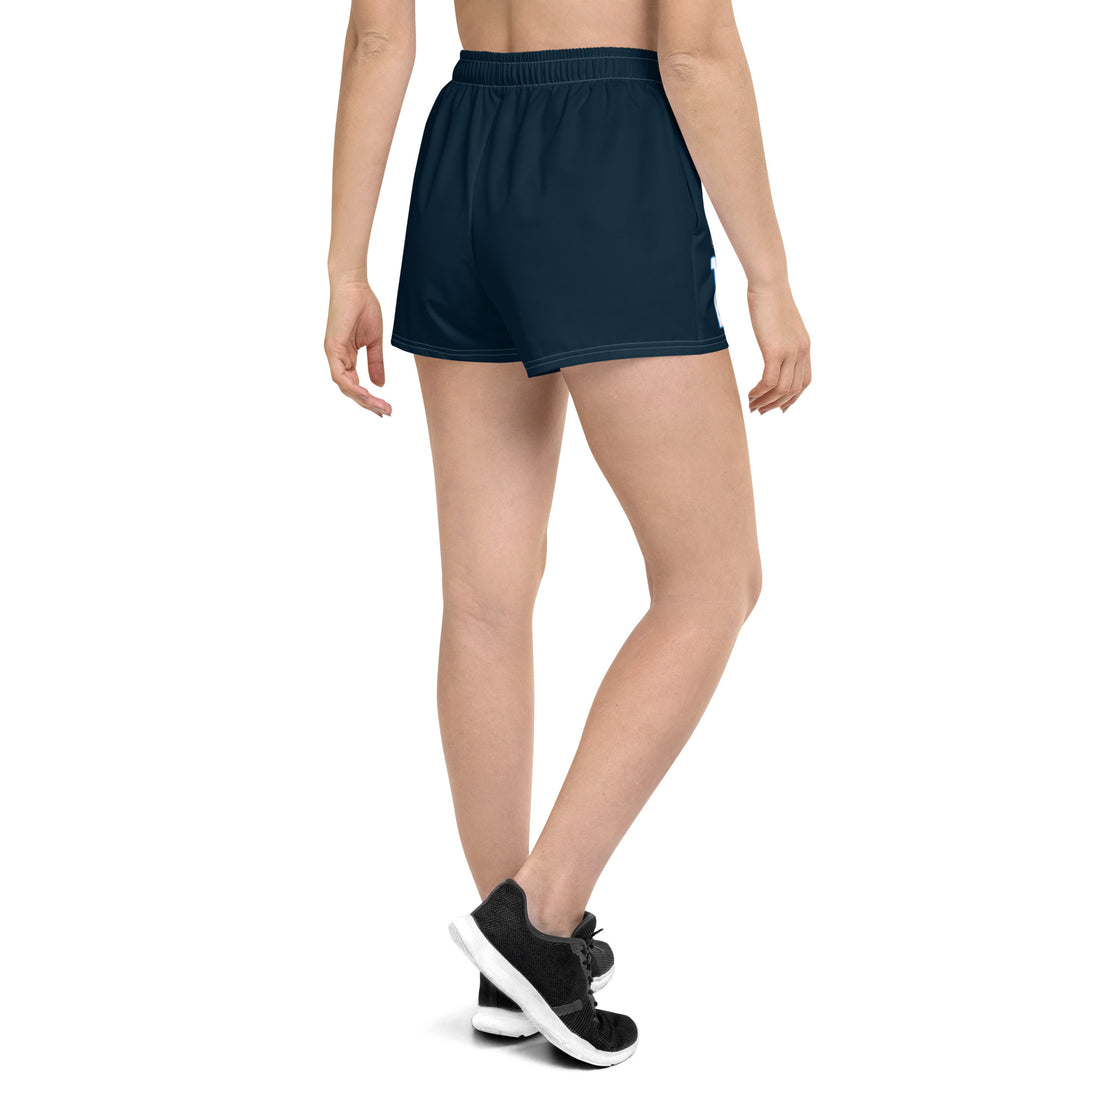 Leslie Bernard 13 Boca Raton Picklers™ SKYblue™ 2023 Authentic Shorts for Women - Dark Blue